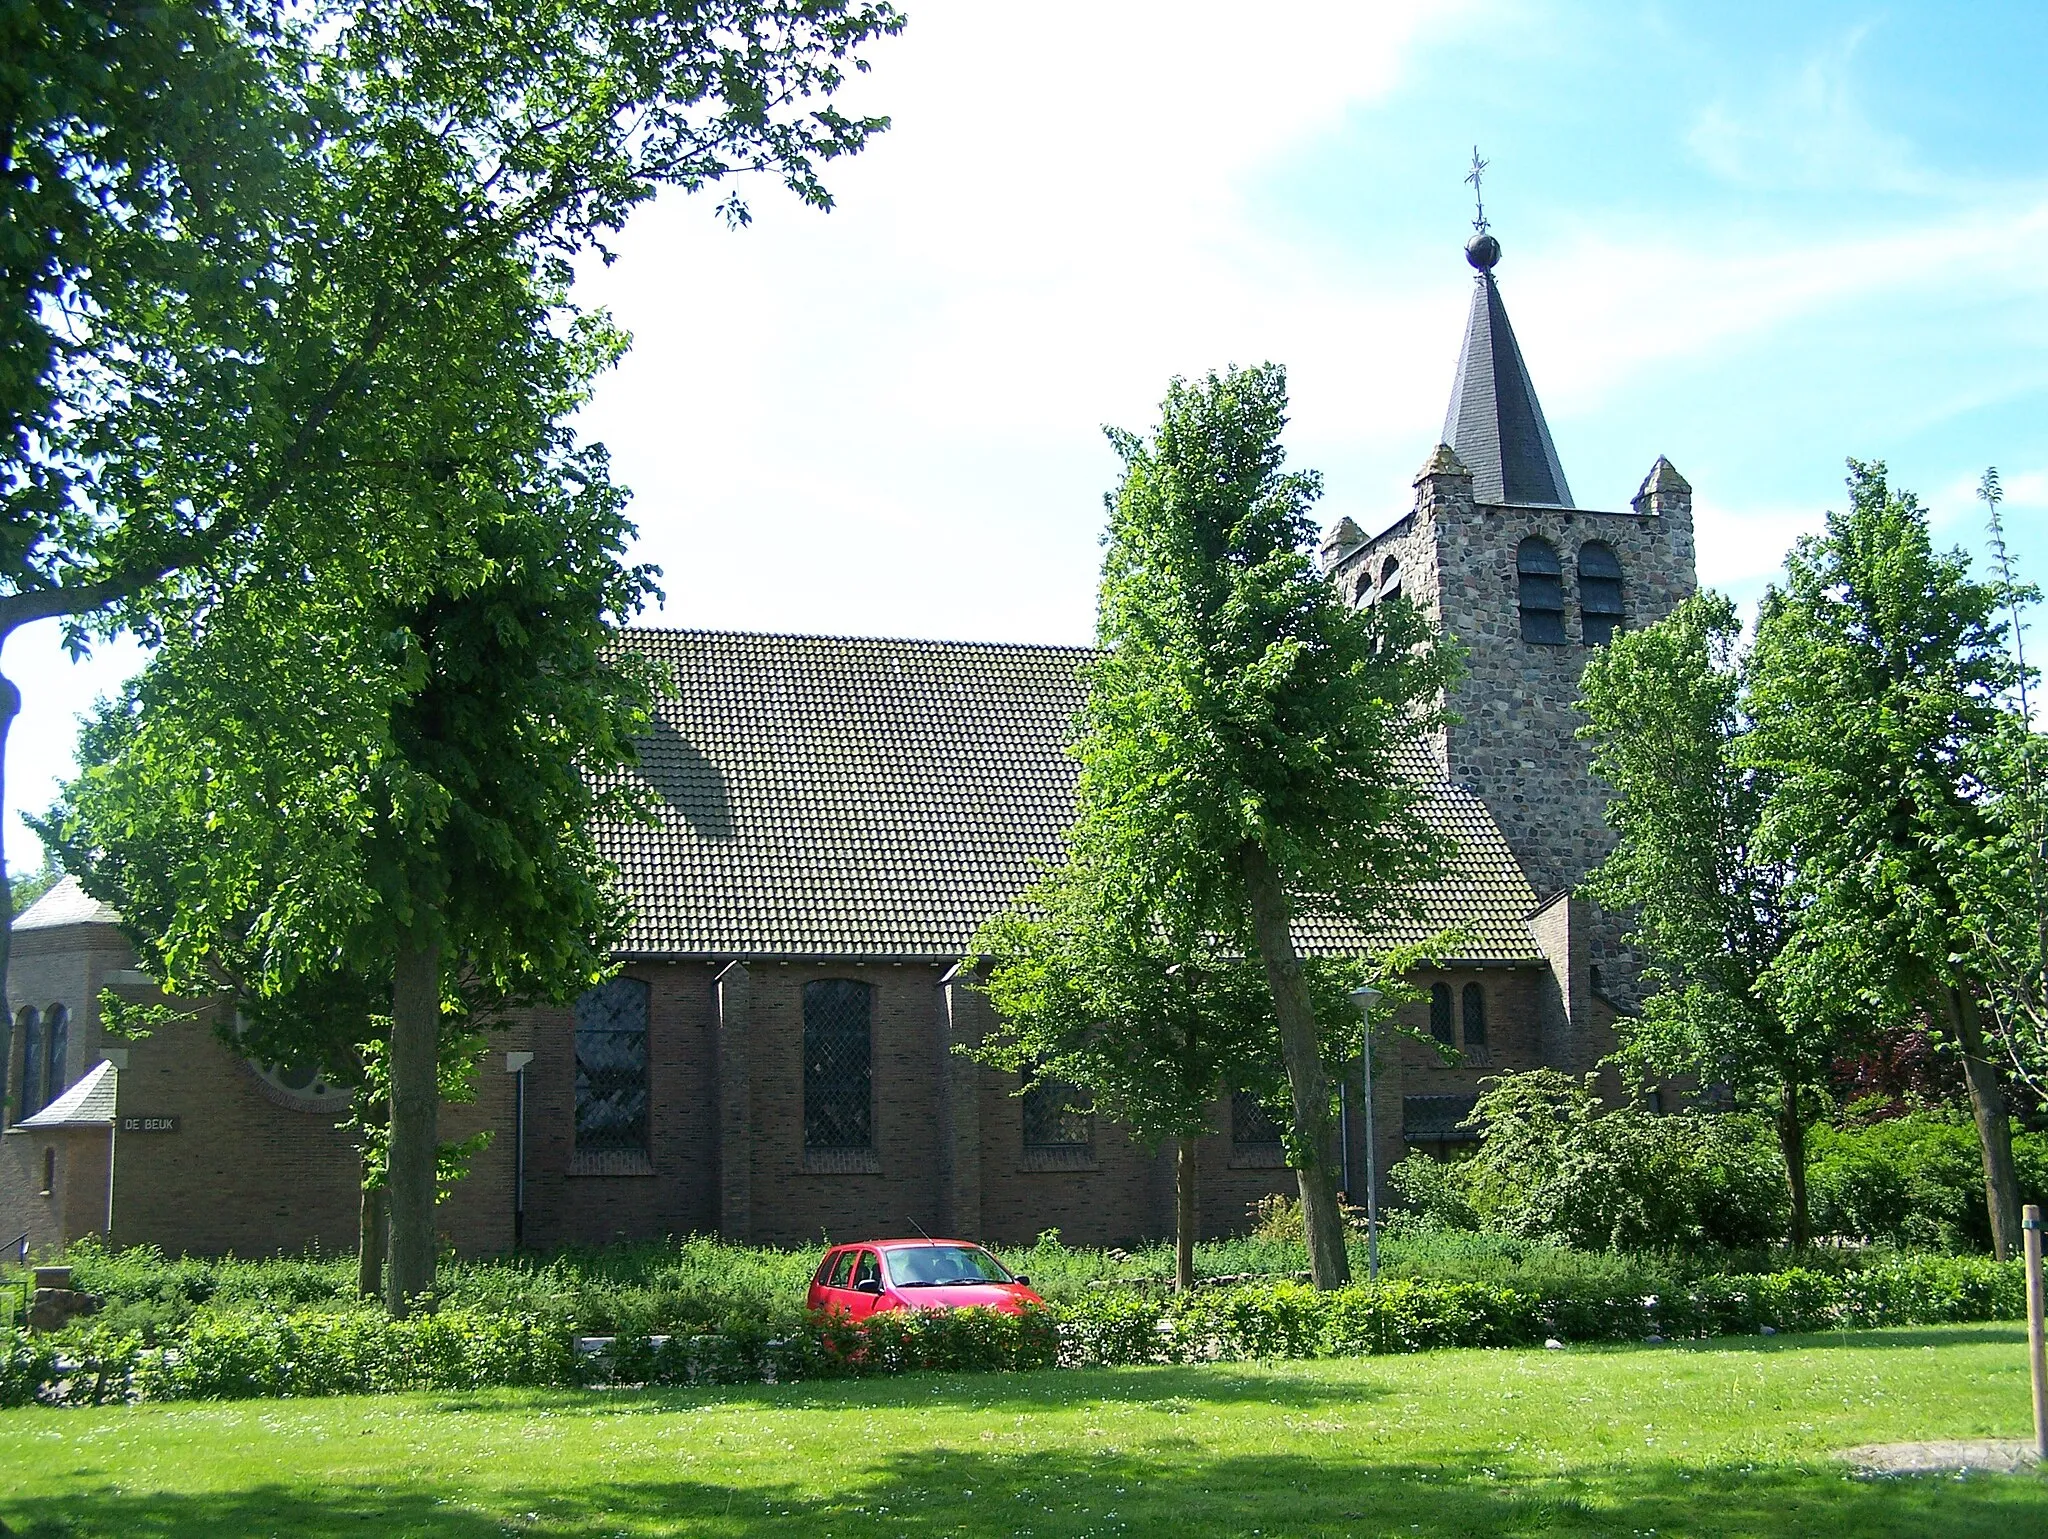 Image of Wieringerwerf